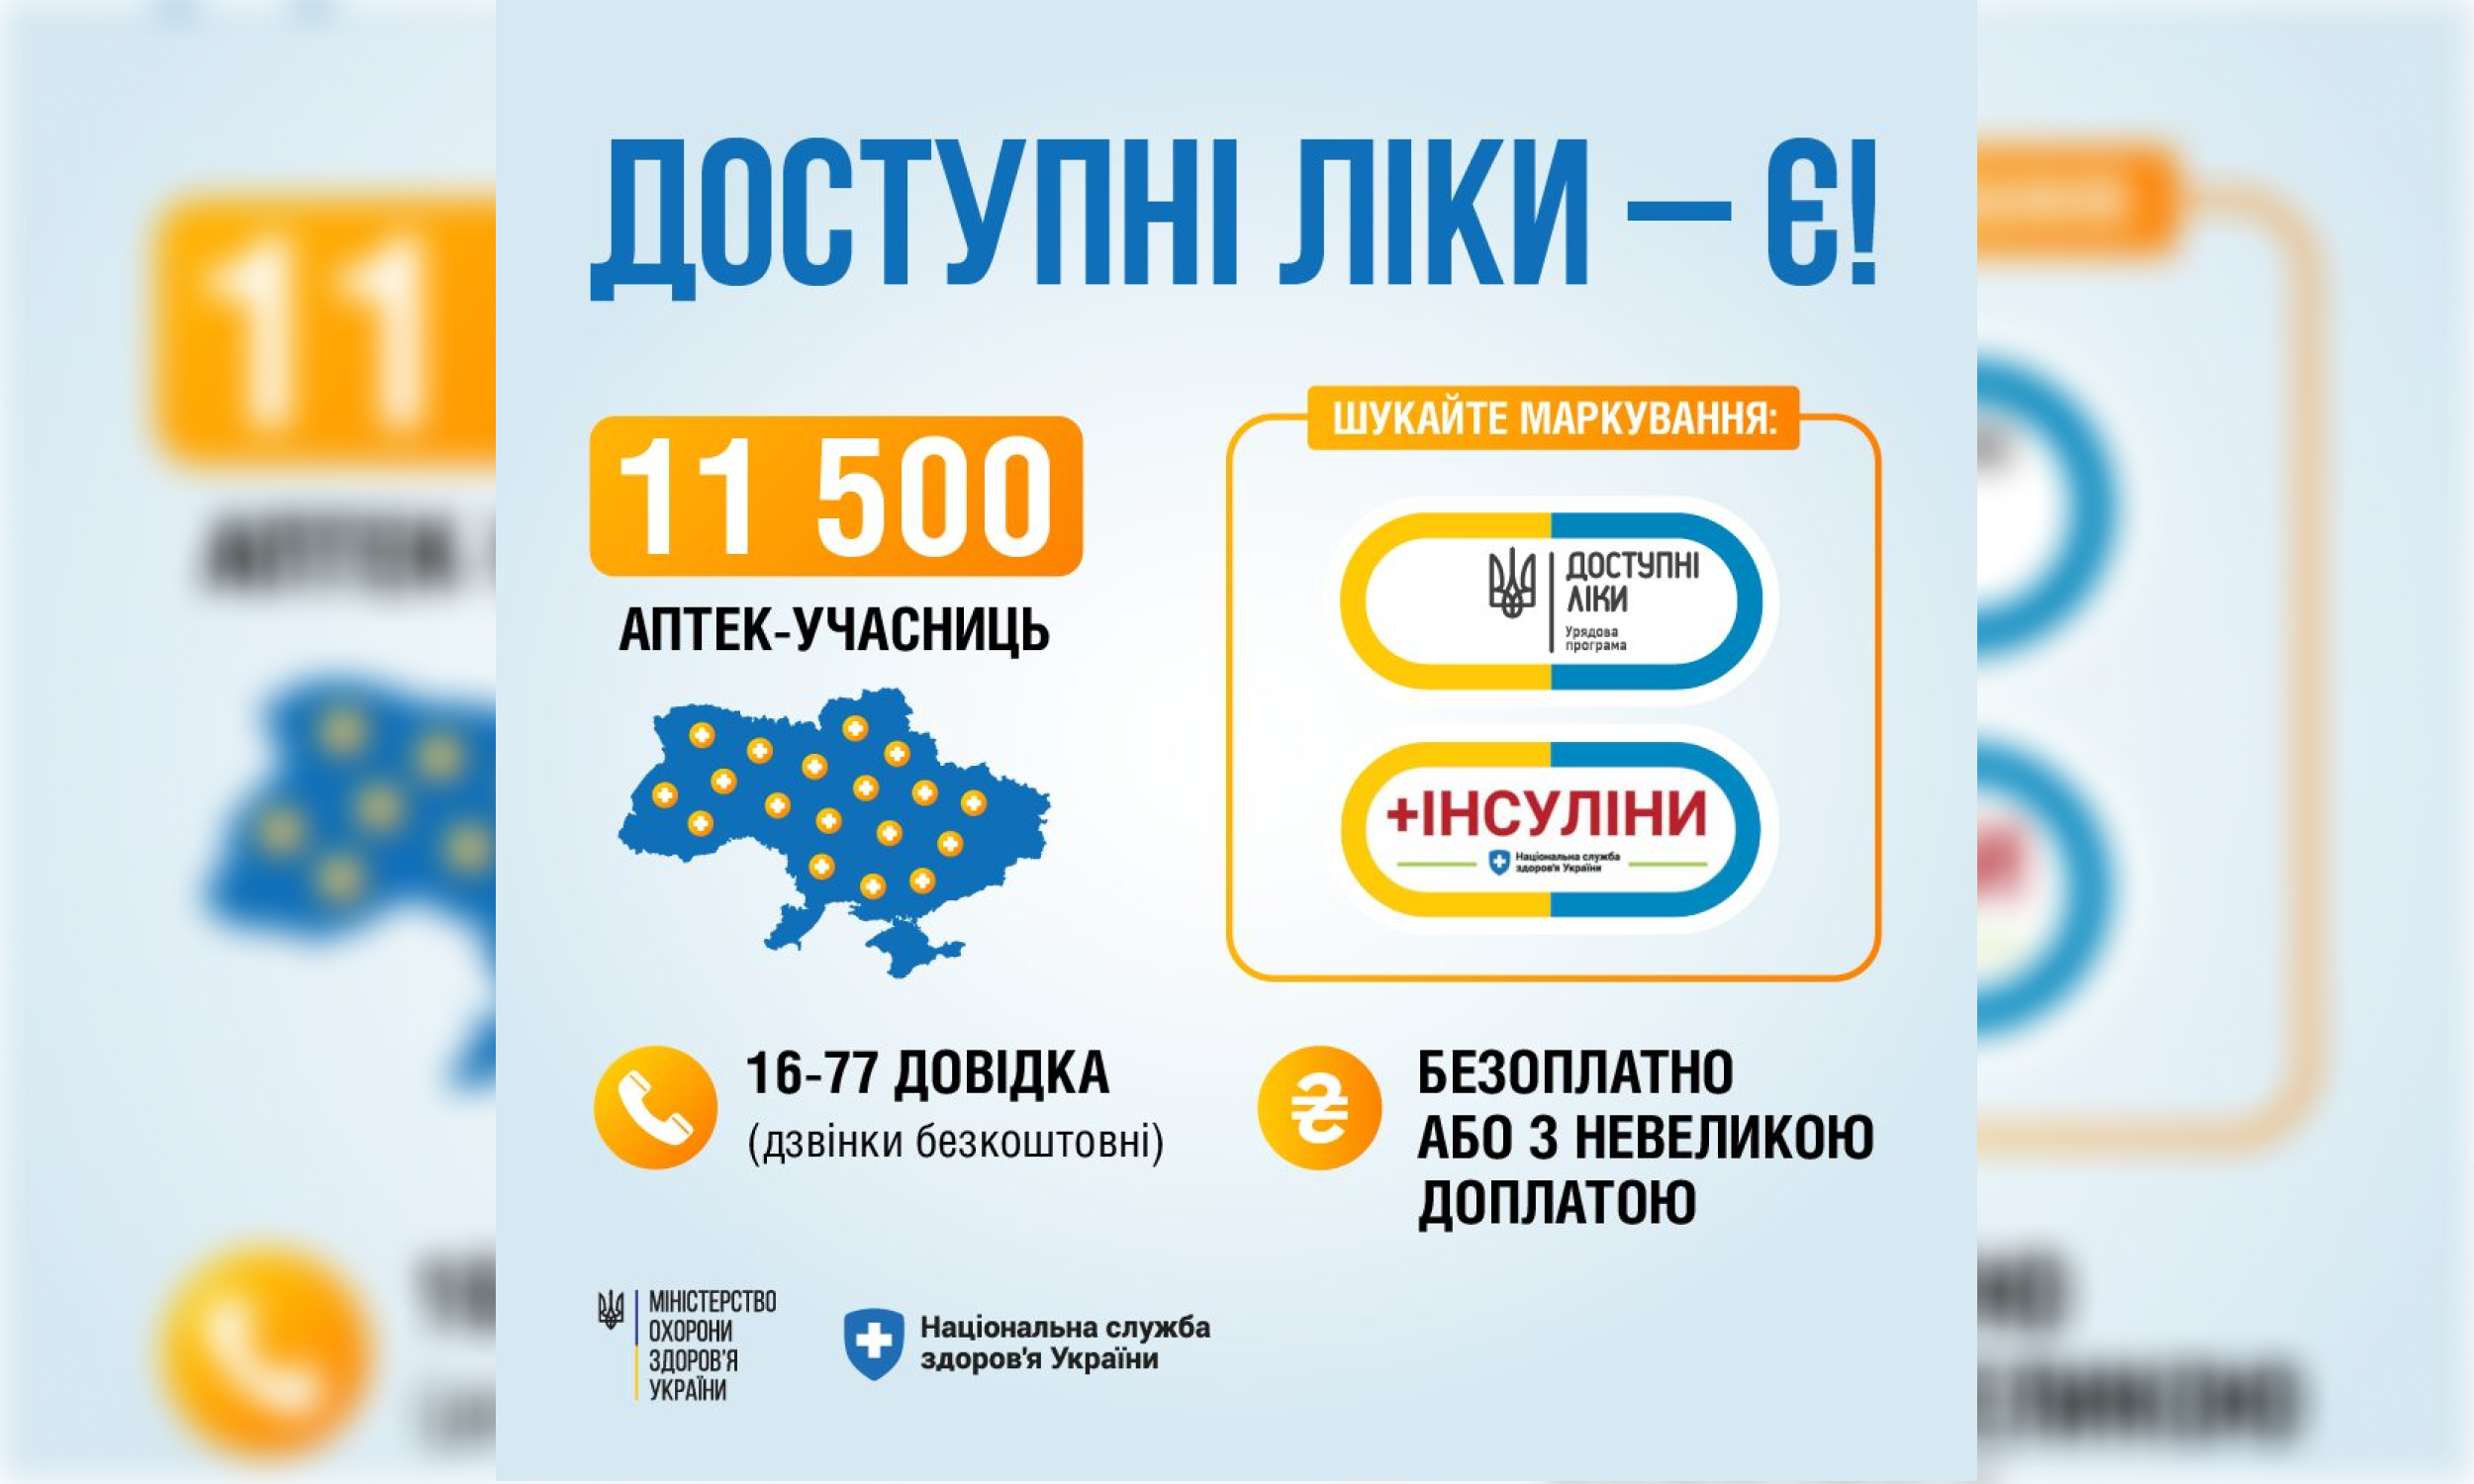 МОЗ: В Україні продовжує діяти програма "Доступні ліки"